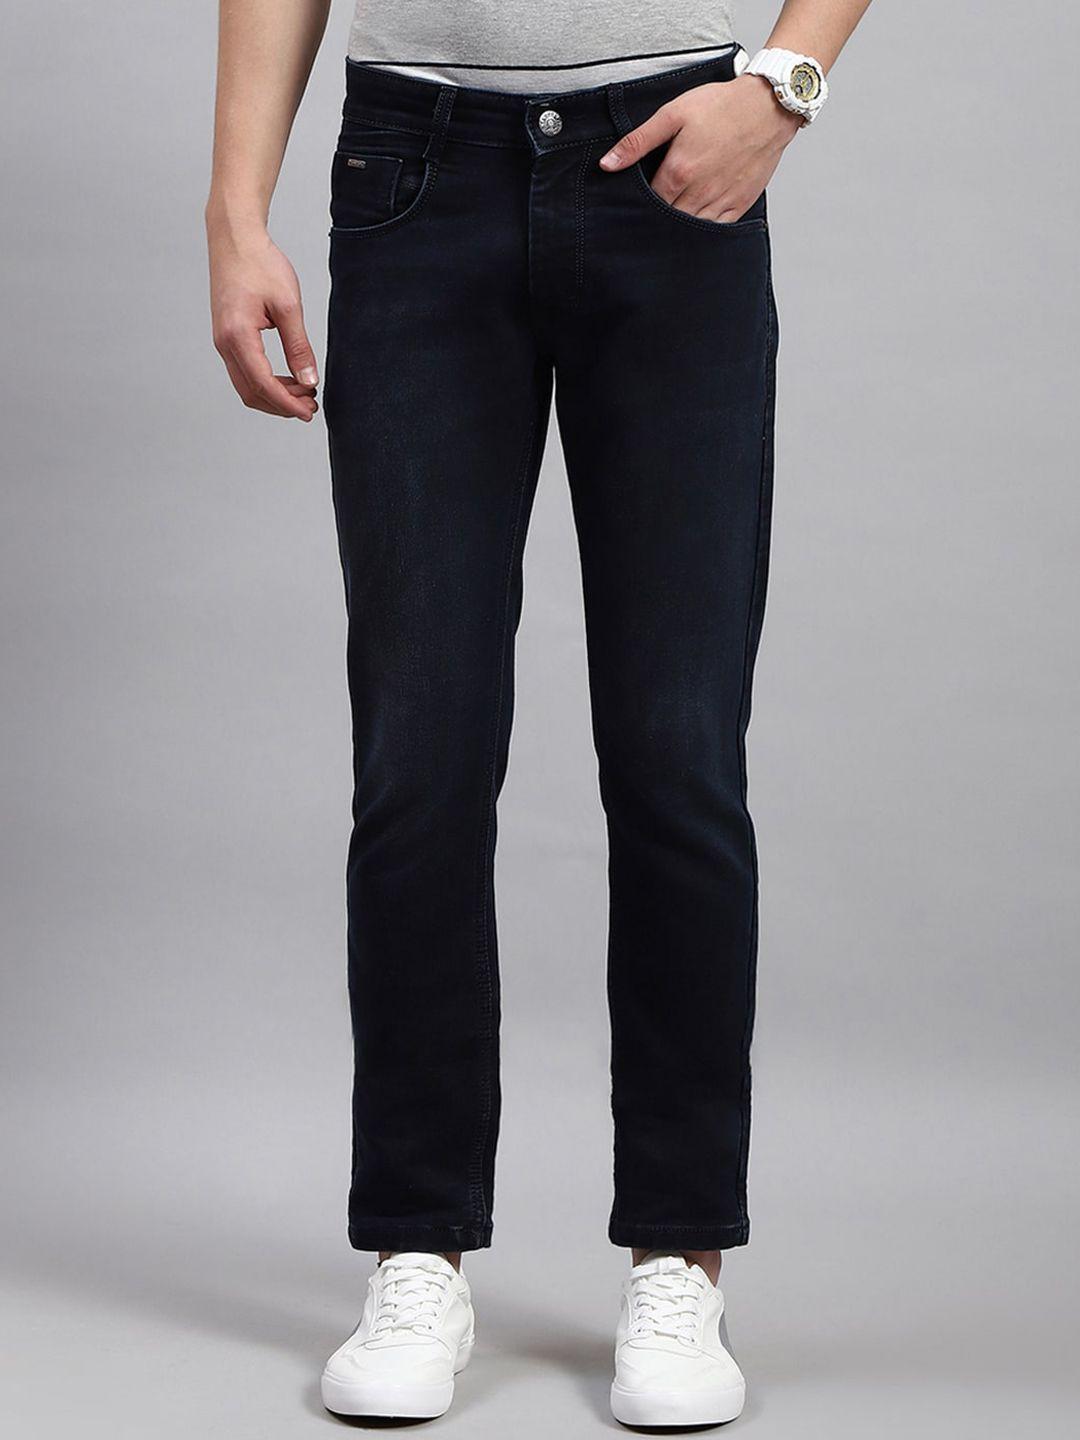 monte-carlo-men-skinny-fit-clean-look-jeans